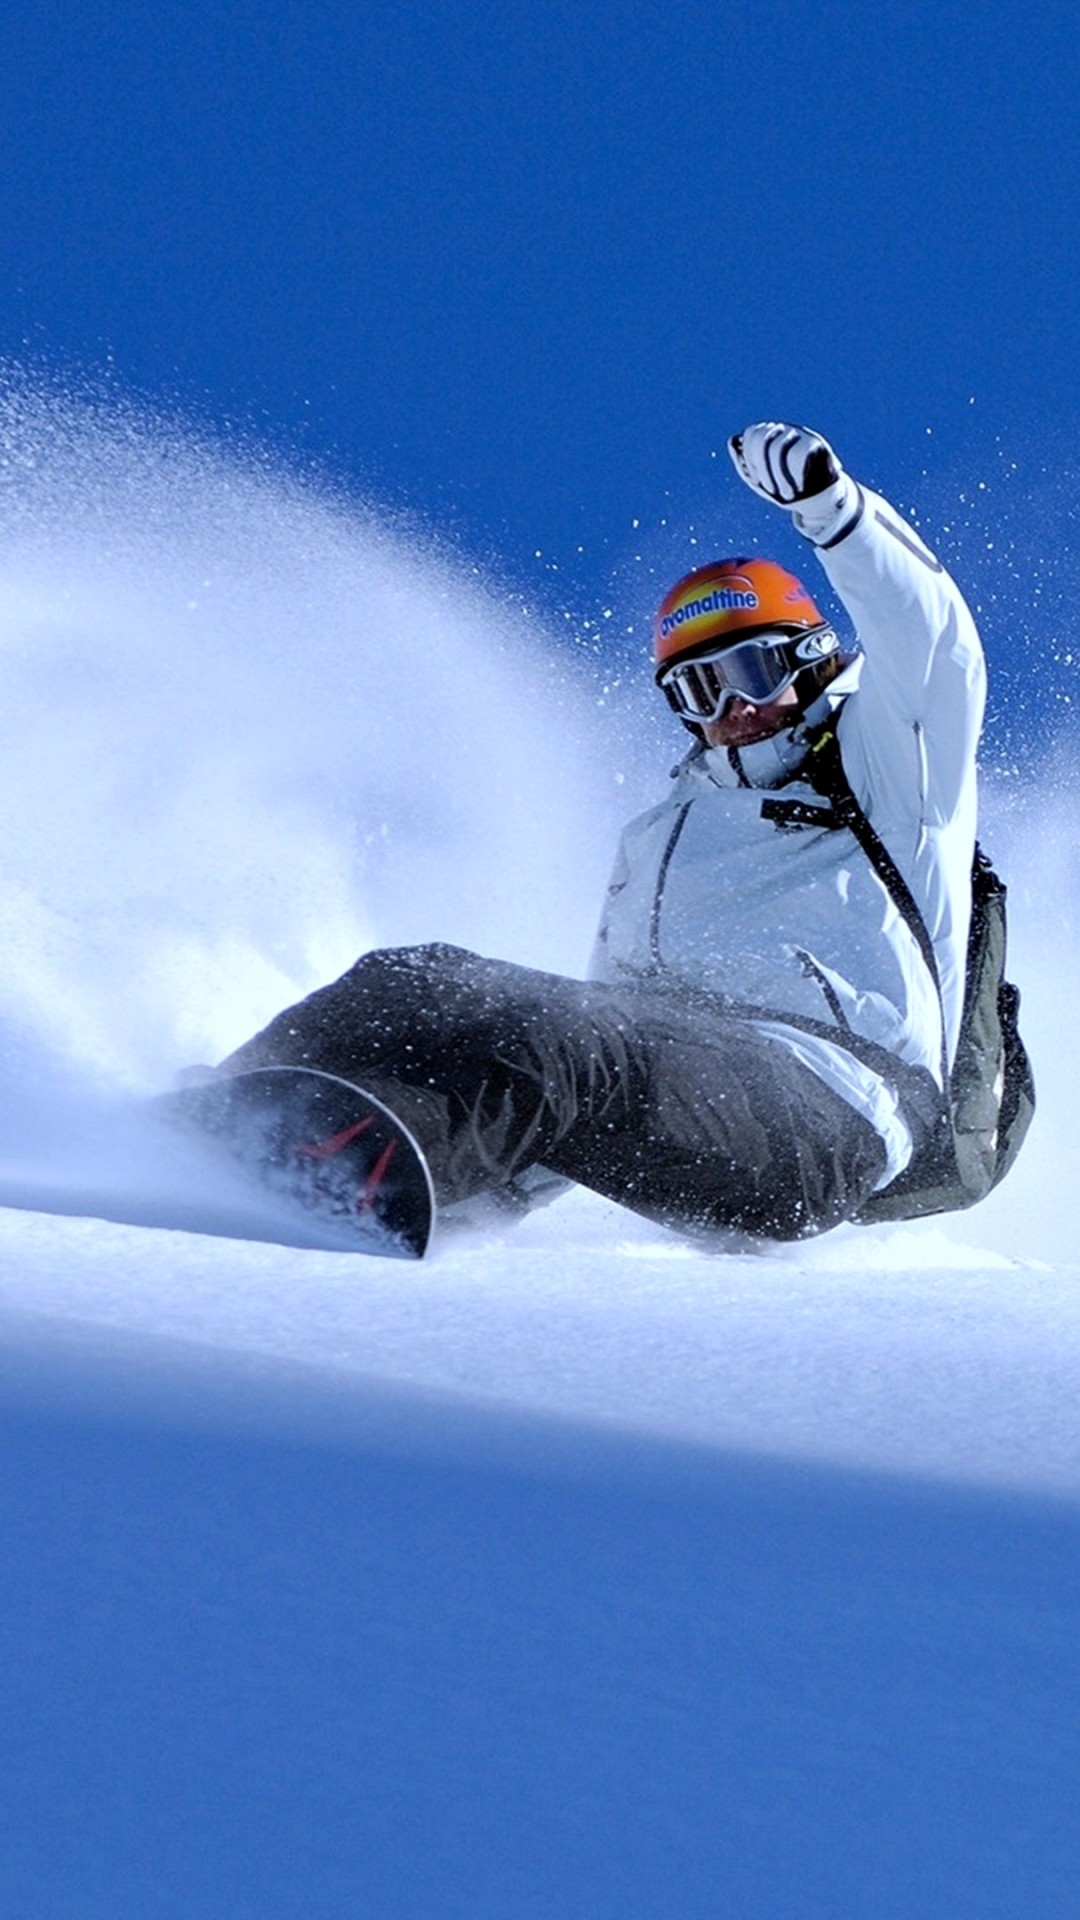 Snowboard Wallpaper Images  Free Download on Freepik